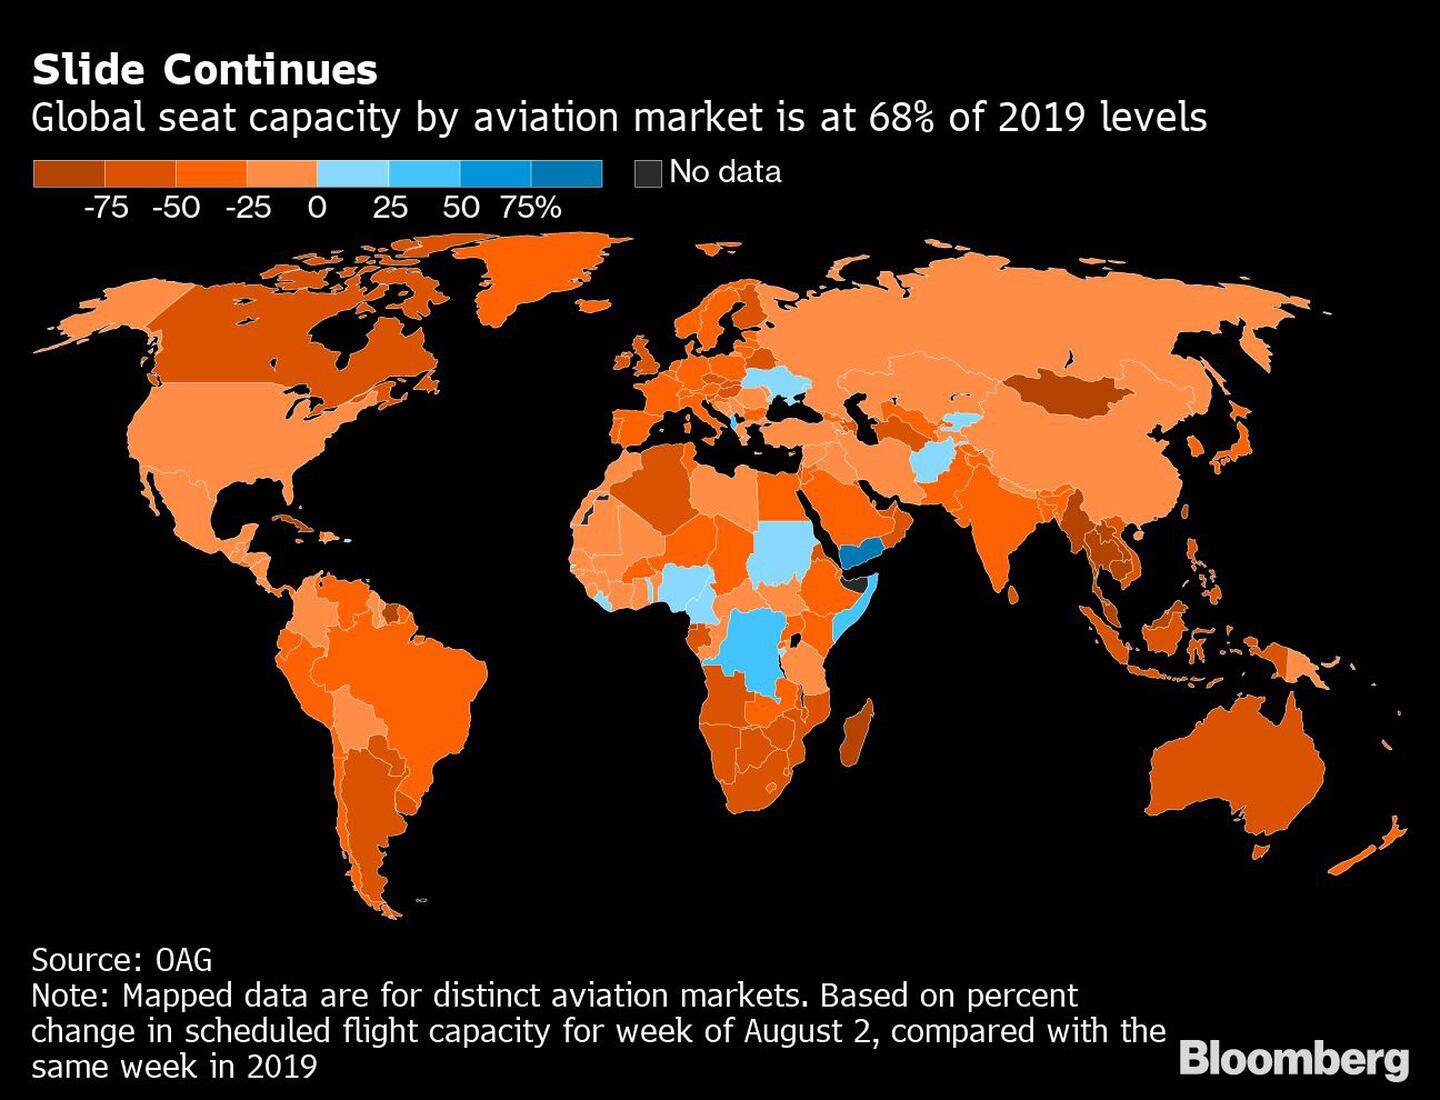 La capacidad mundial de asientos del mercado de la aviación se sitúa en el 68% de los niveles de 2019.dfd